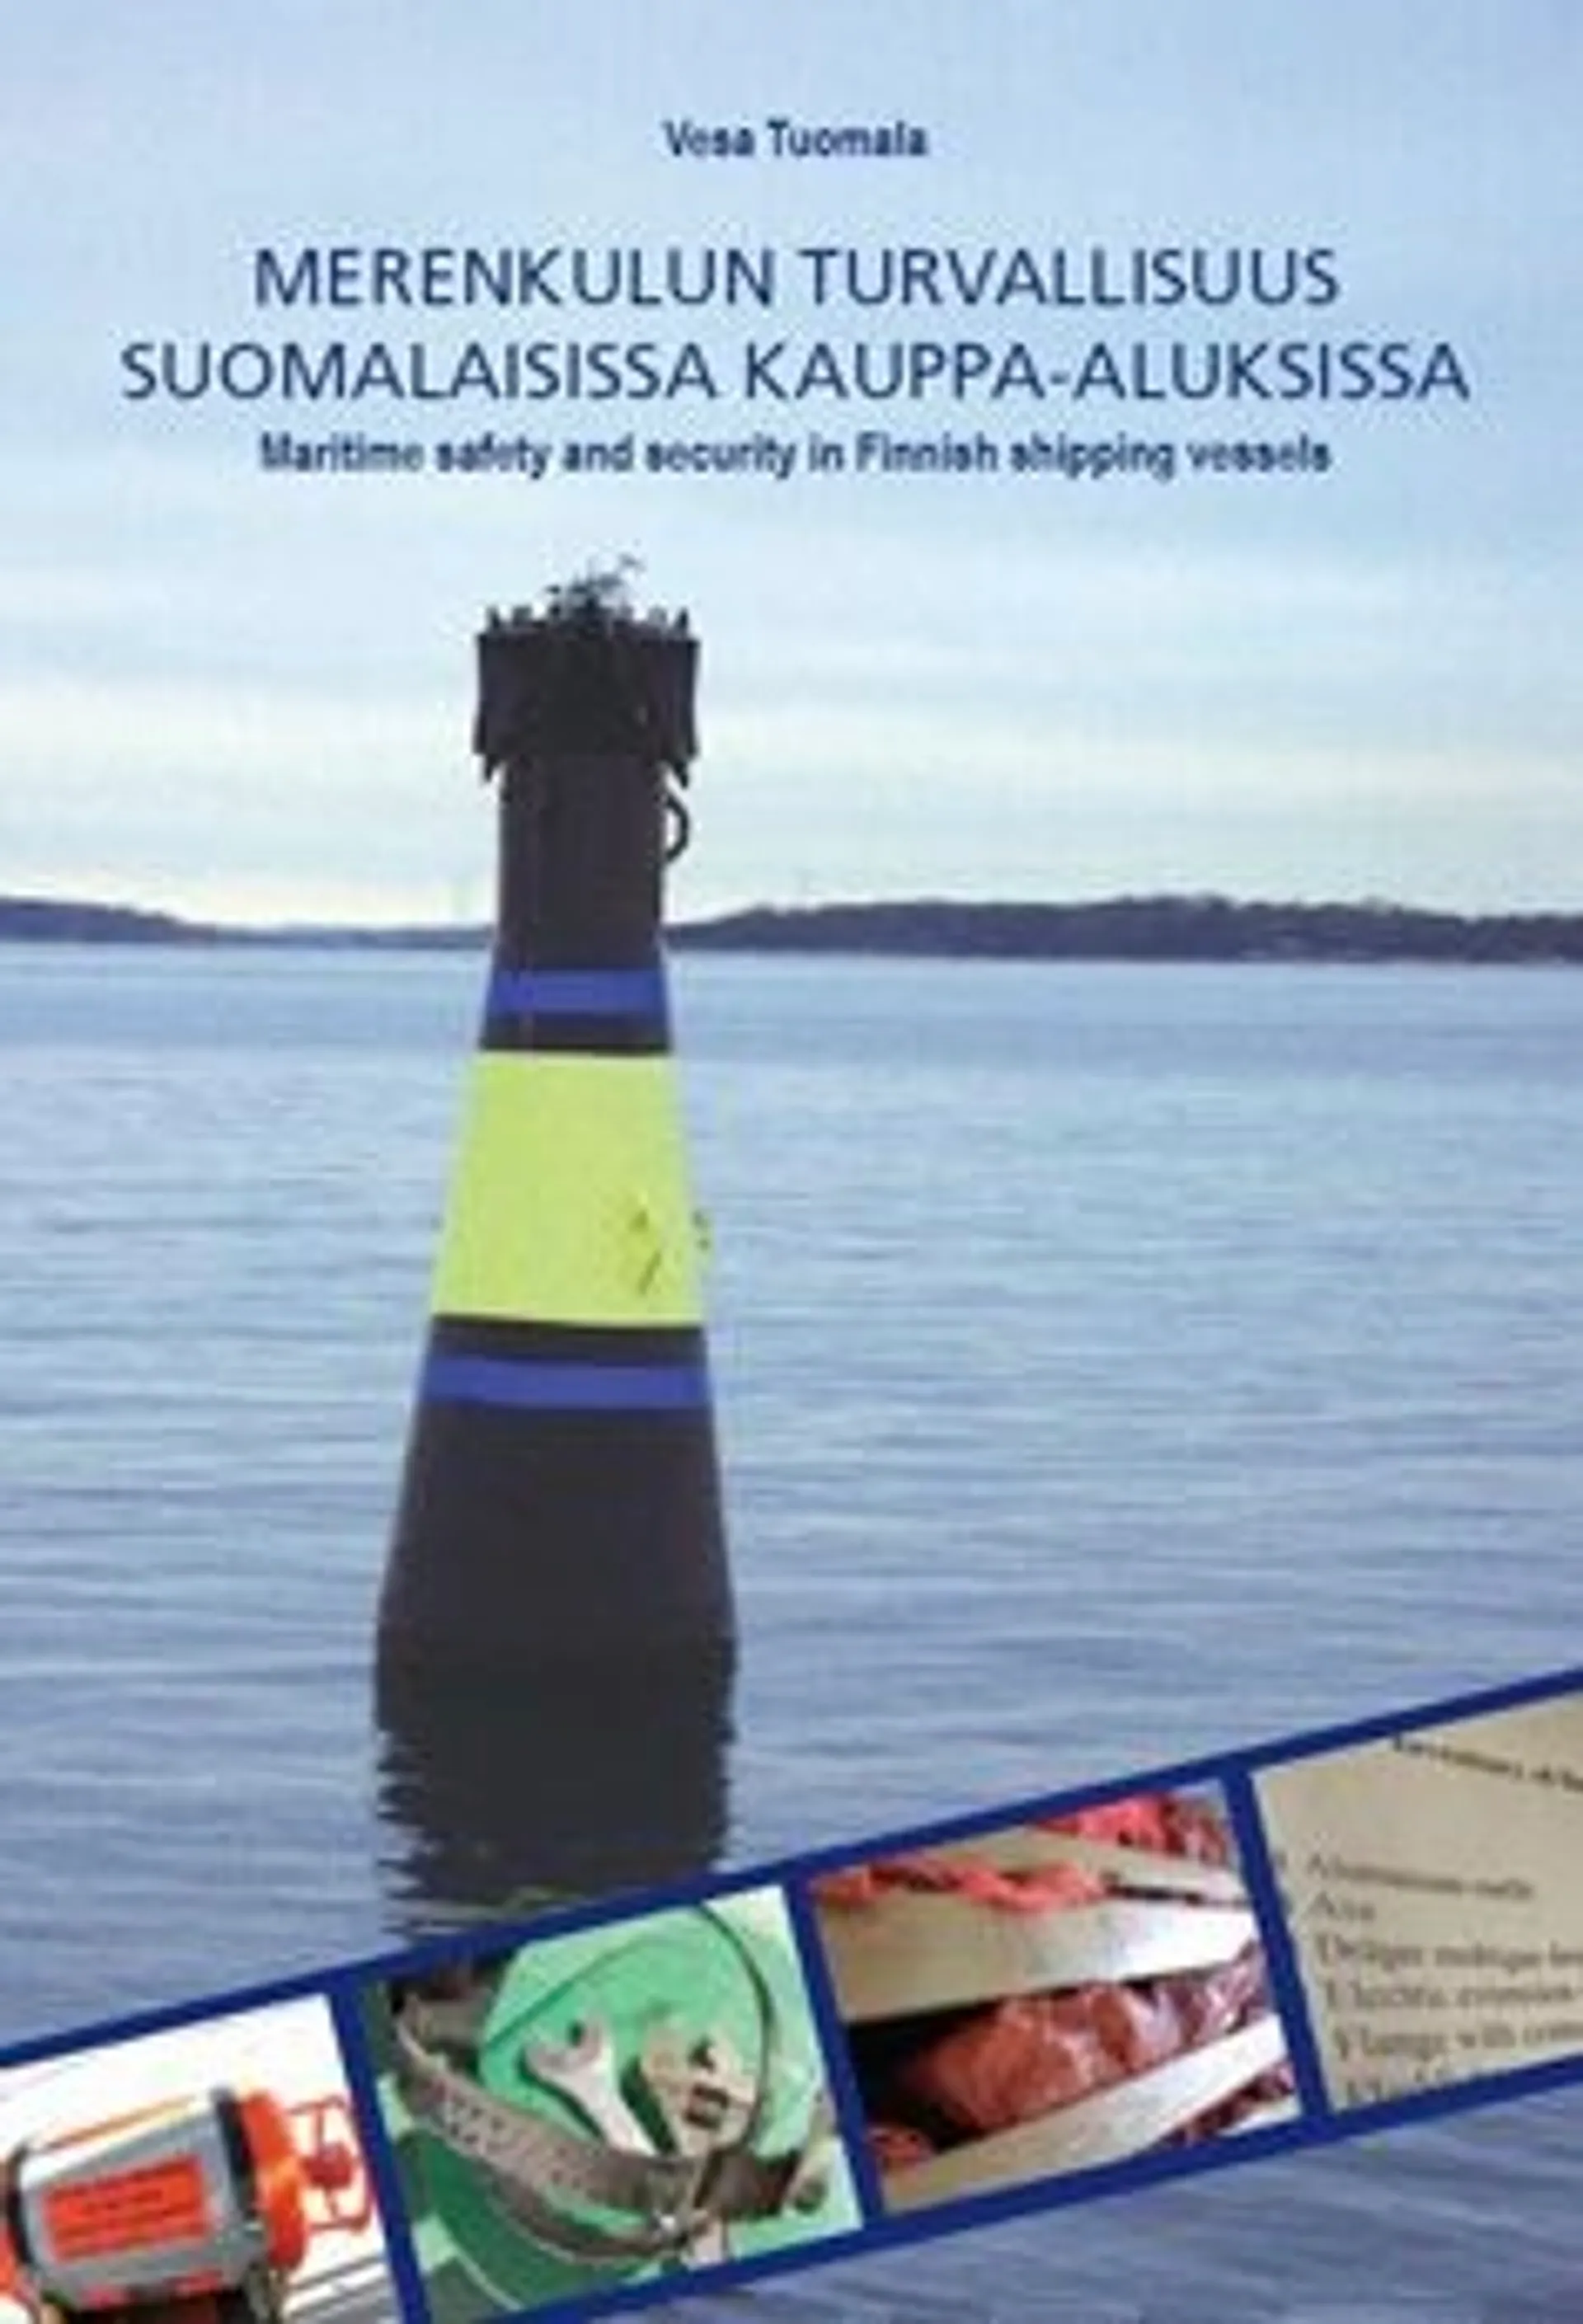 Tuomala, Merenkulun turvallisuus suomalaisissa kauppa-aluksissa